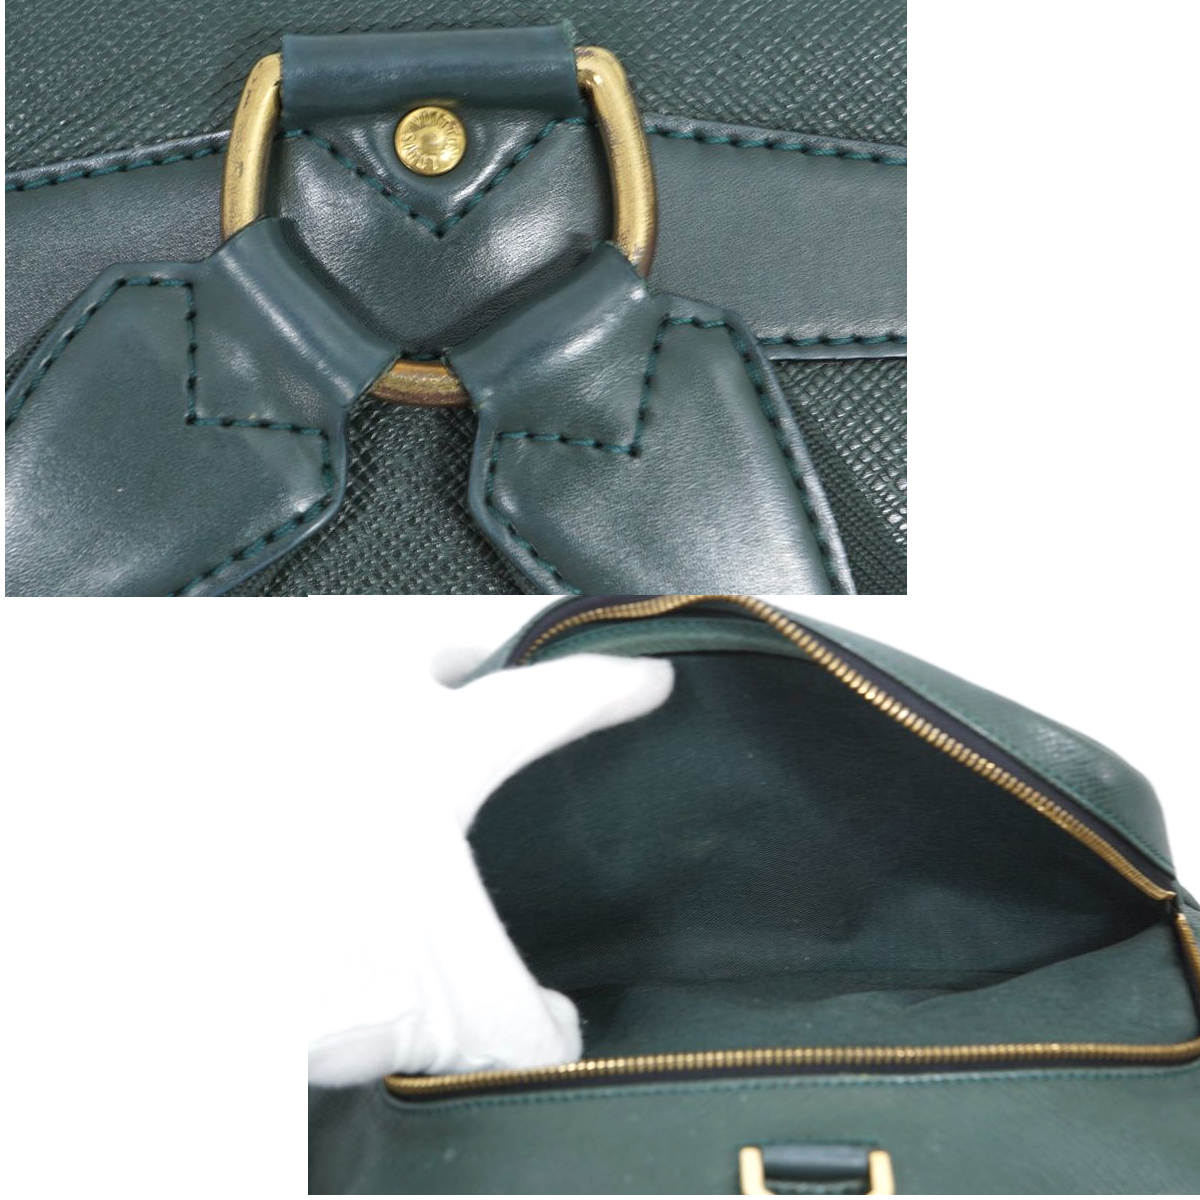 【 в хорошем состоянии  товар 】Louis Vuitton ... ... ...  рюкзак   рюкзак    наплечная сумка   сумка  TAIGA  мужской   женский  M30174